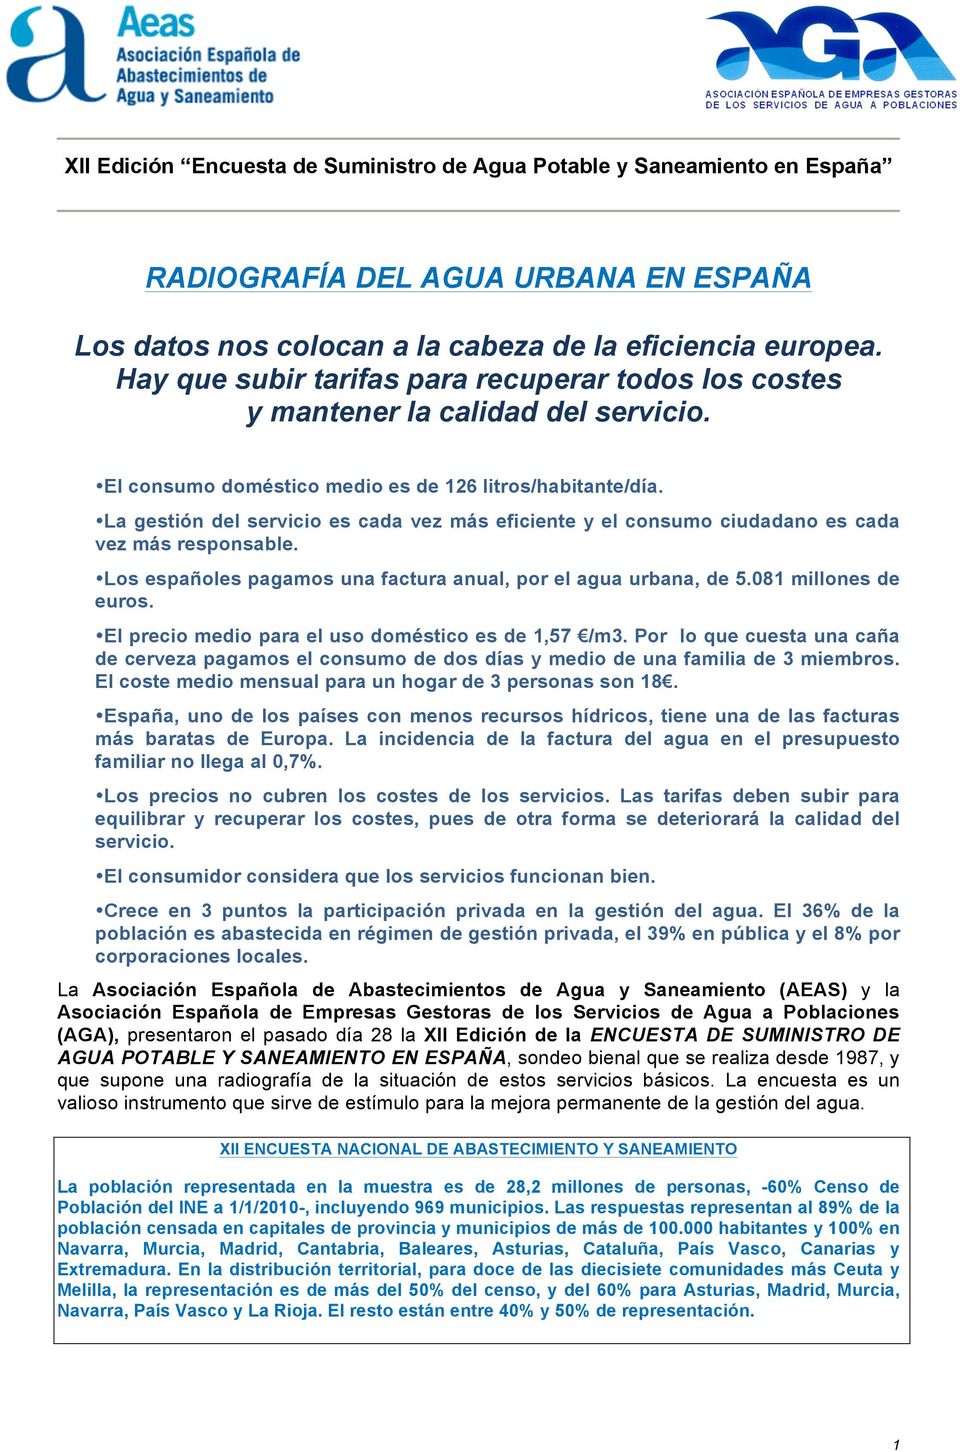 La gestión del servicio es cada vez más eficiente y el consumo ciudadano es cada vez más responsable. Los españoles pagamos una factura anual, por el agua urbana, de 5.081 millones de euros.